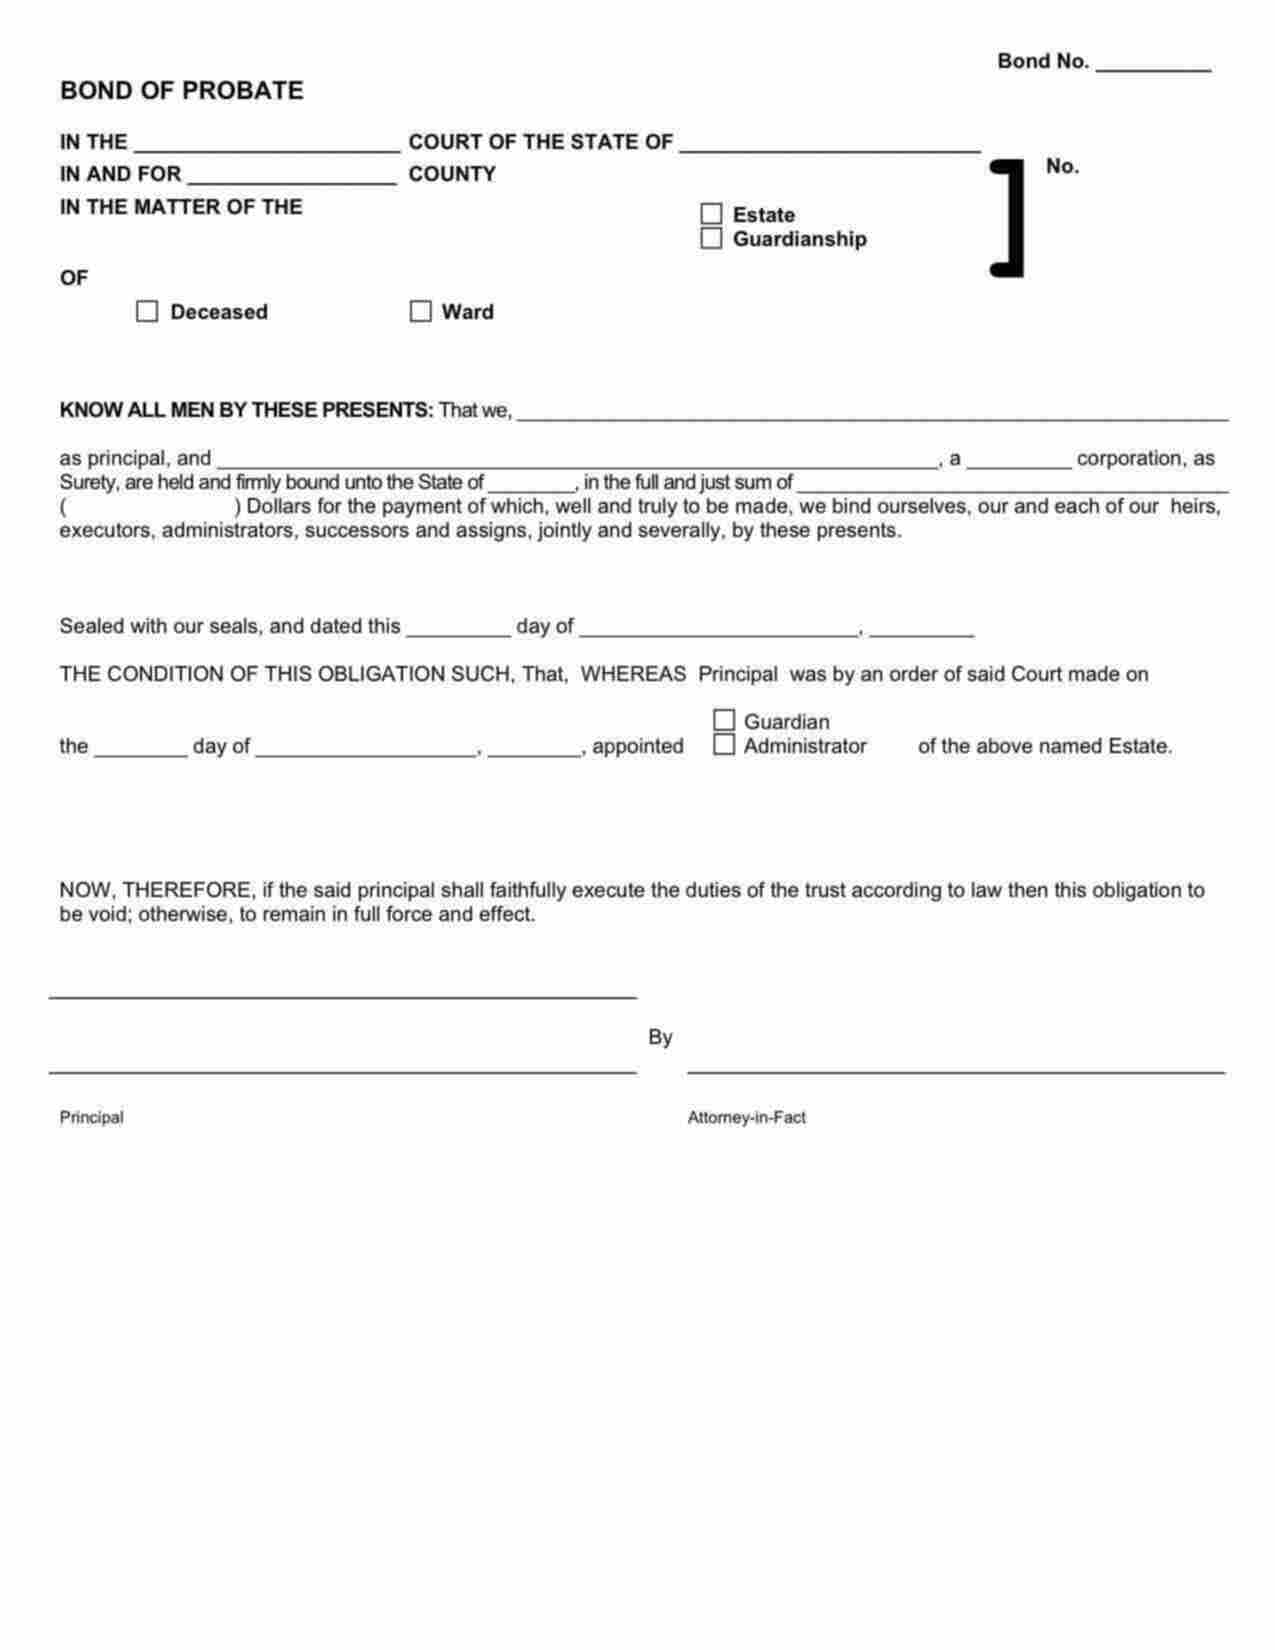 Kansas Administrator/Executor Bond Form